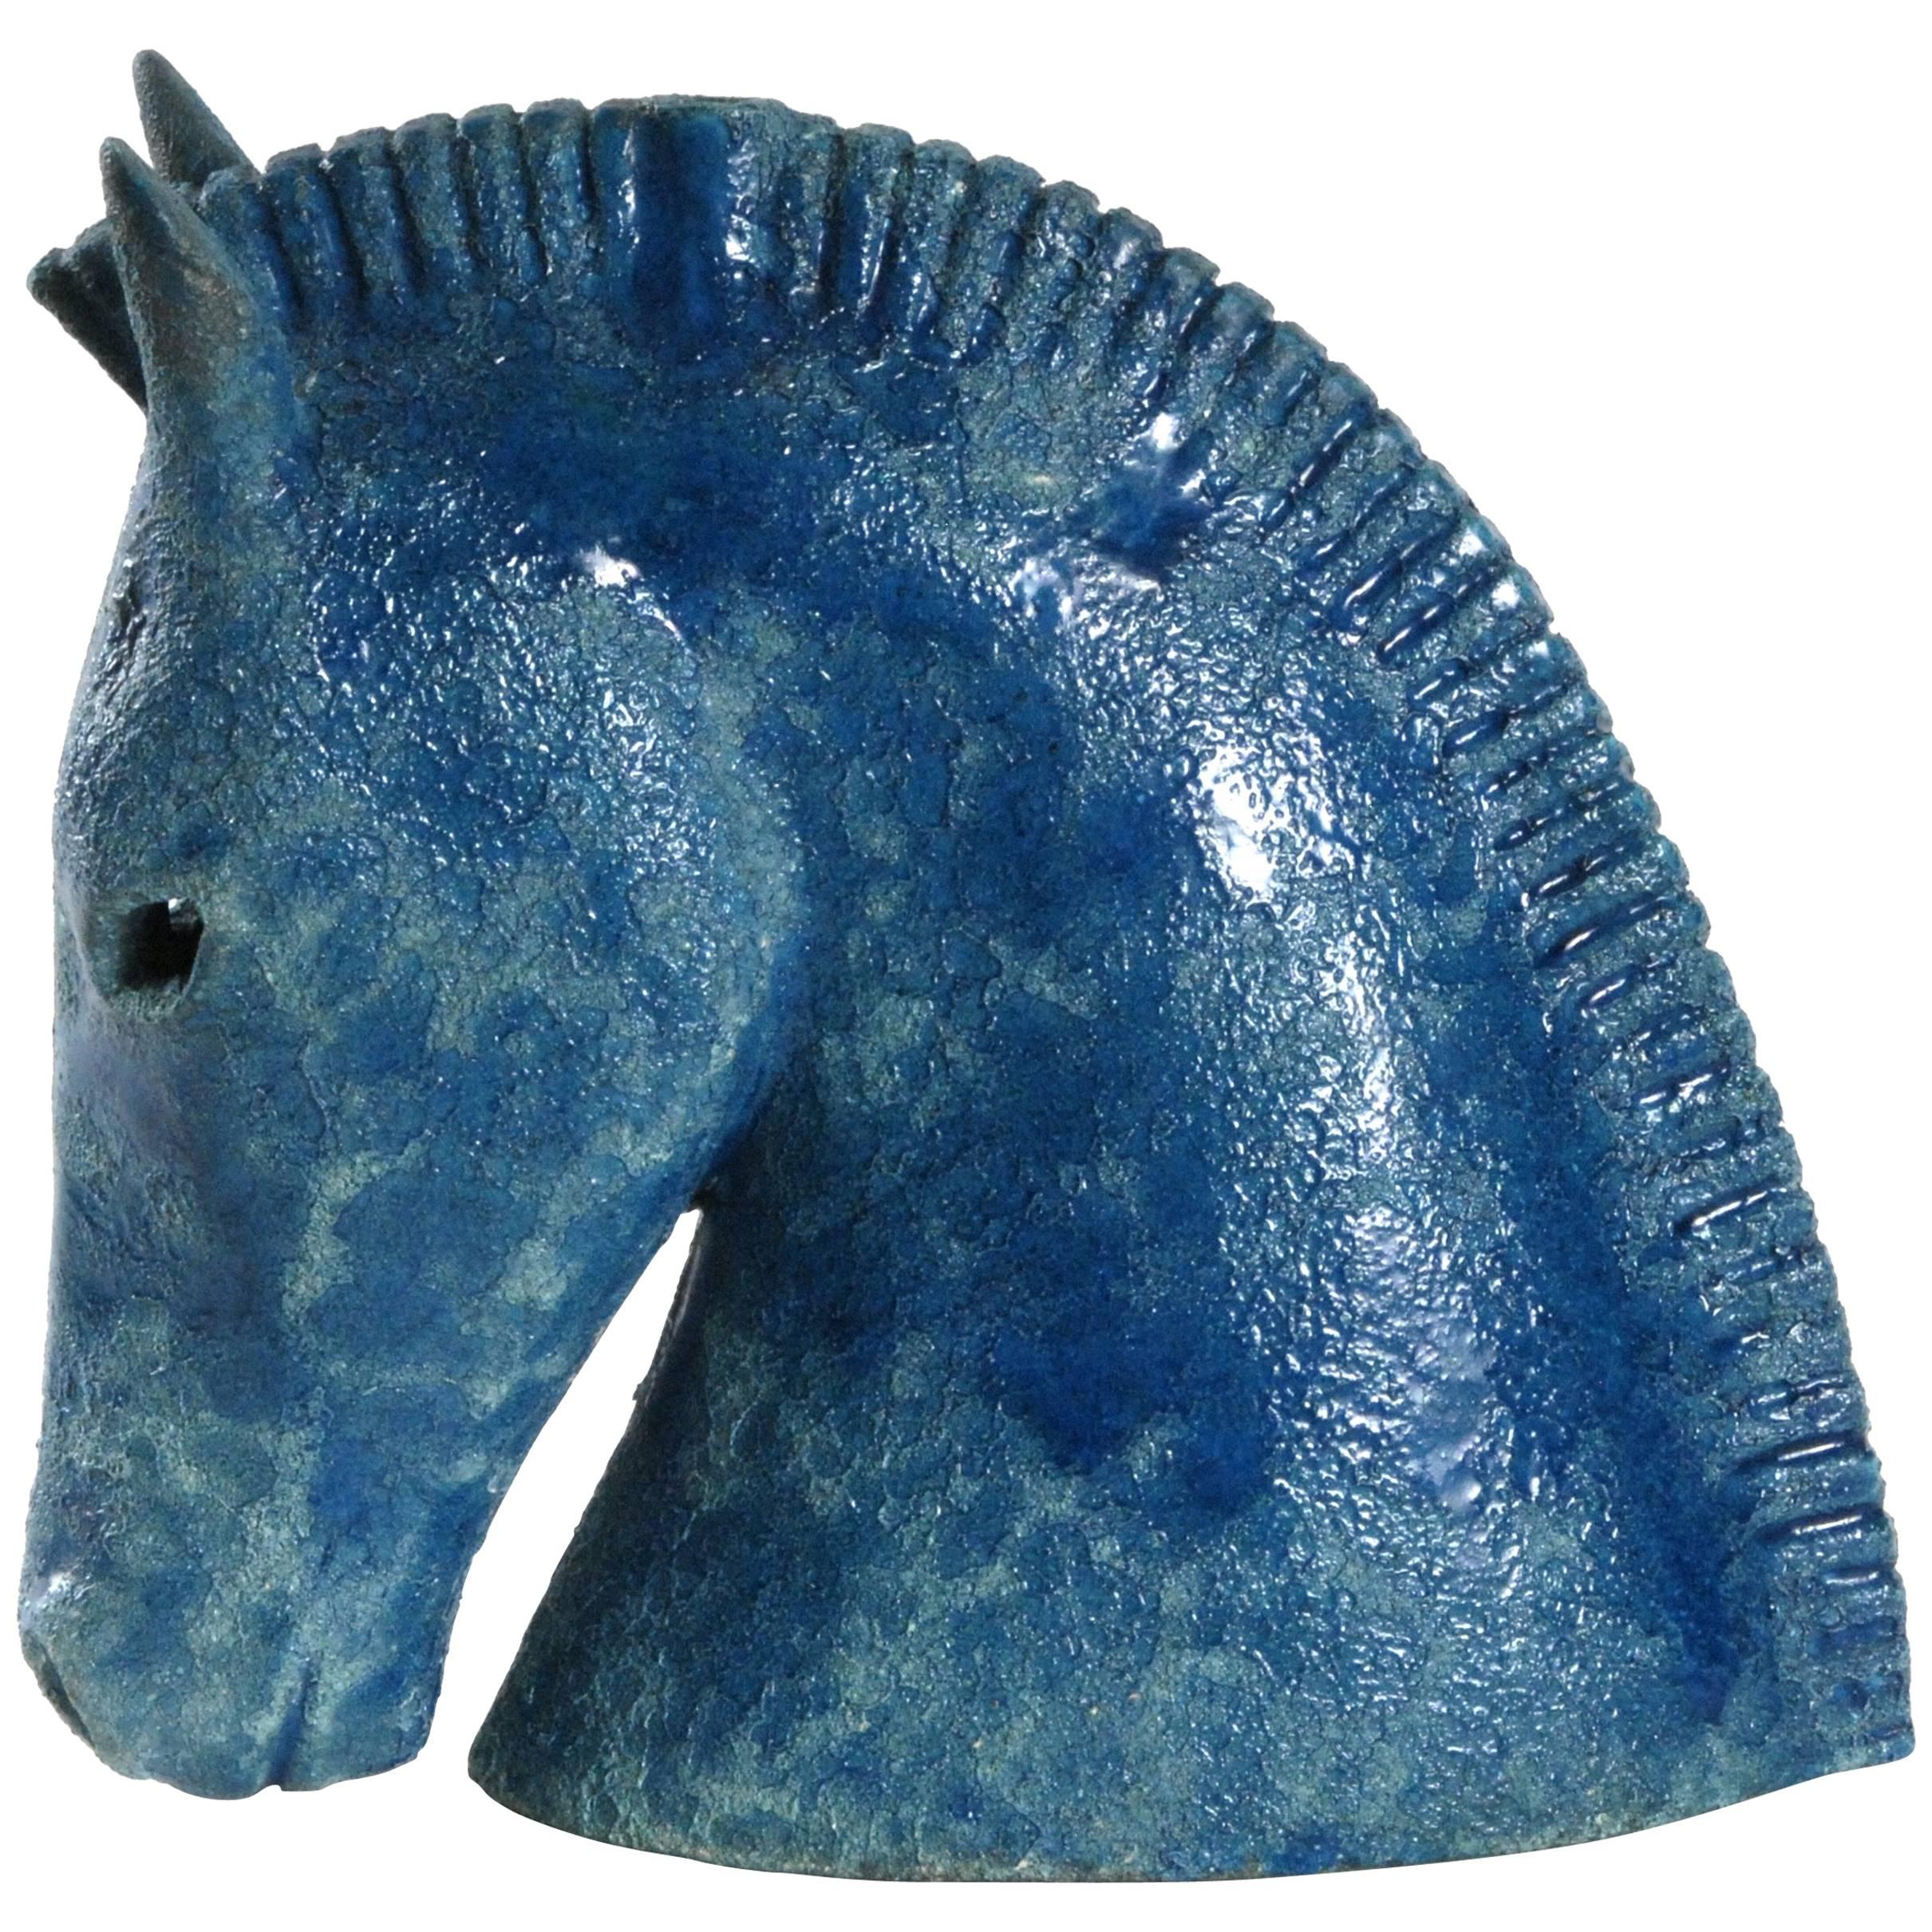 Bitossi Aldo Londi Horse head, Italy, circa 1965